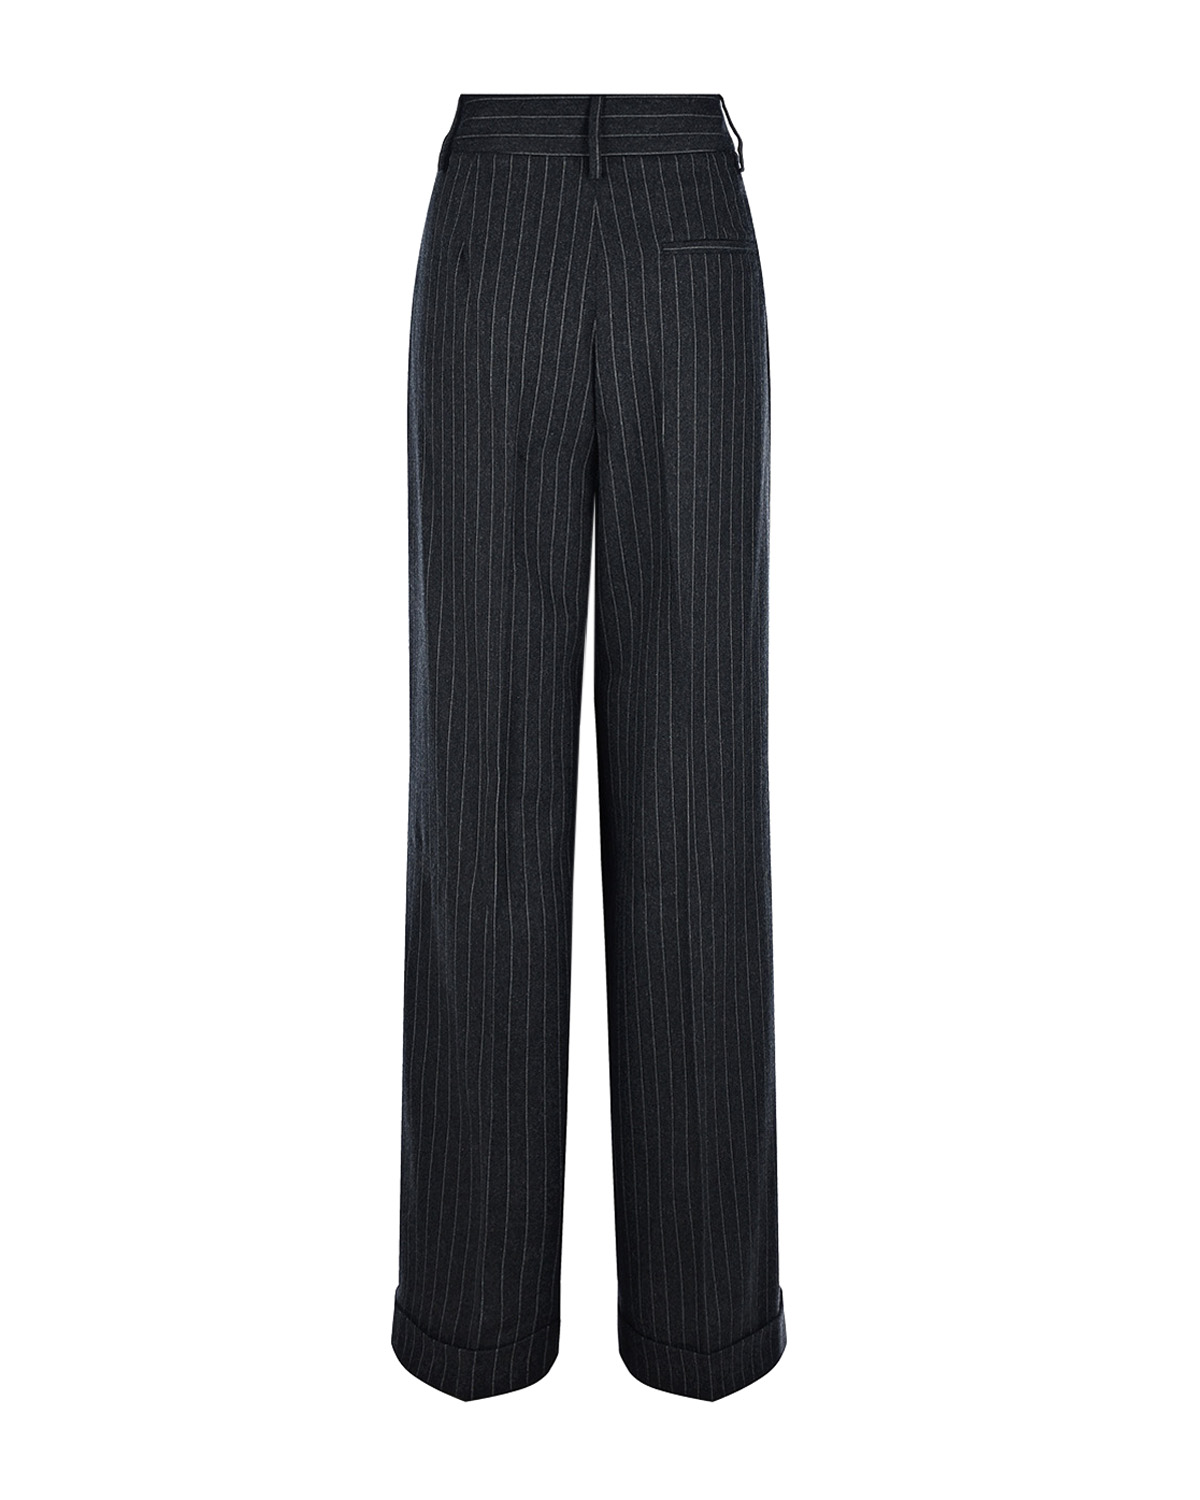 Черные брюки в полоску Vivetta, размер 46, цвет черный - фото 2